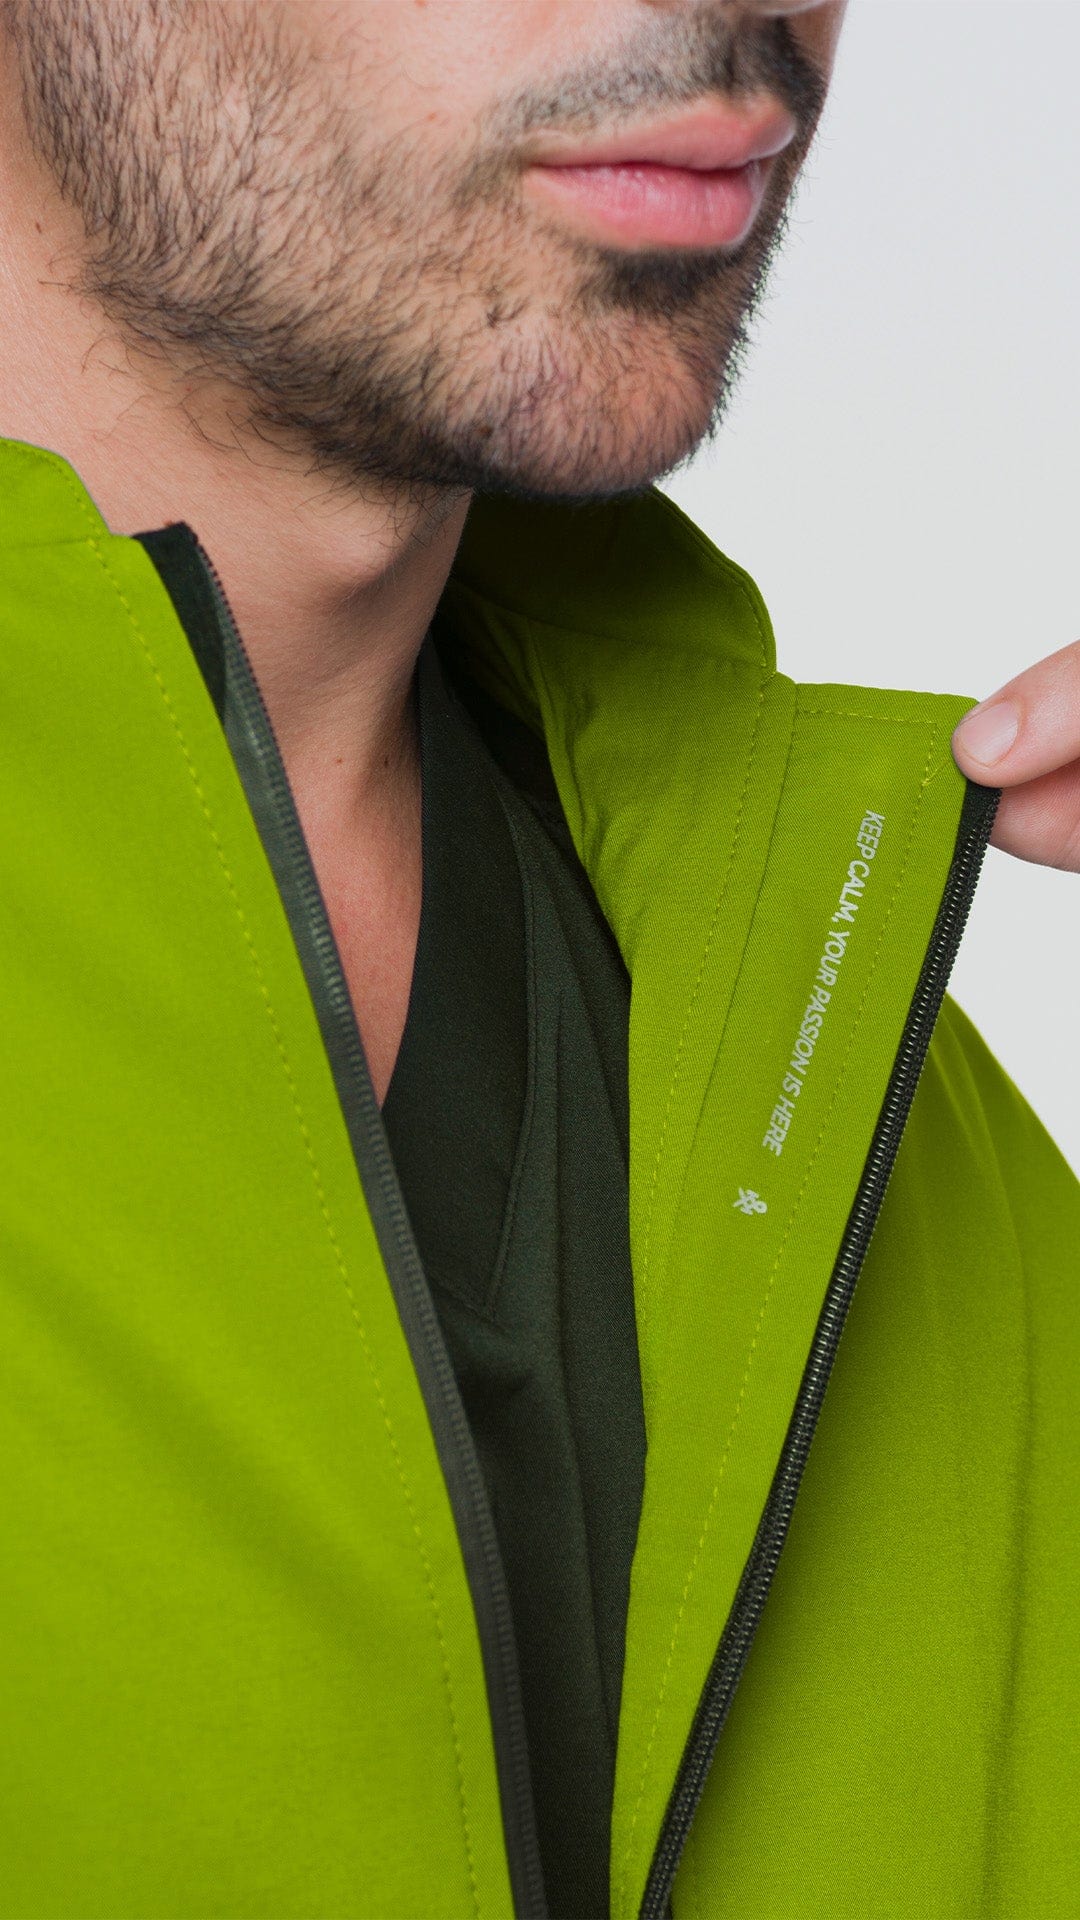 Kanaus® Elemental Jacket Green Apple | Caballero - Kanaus